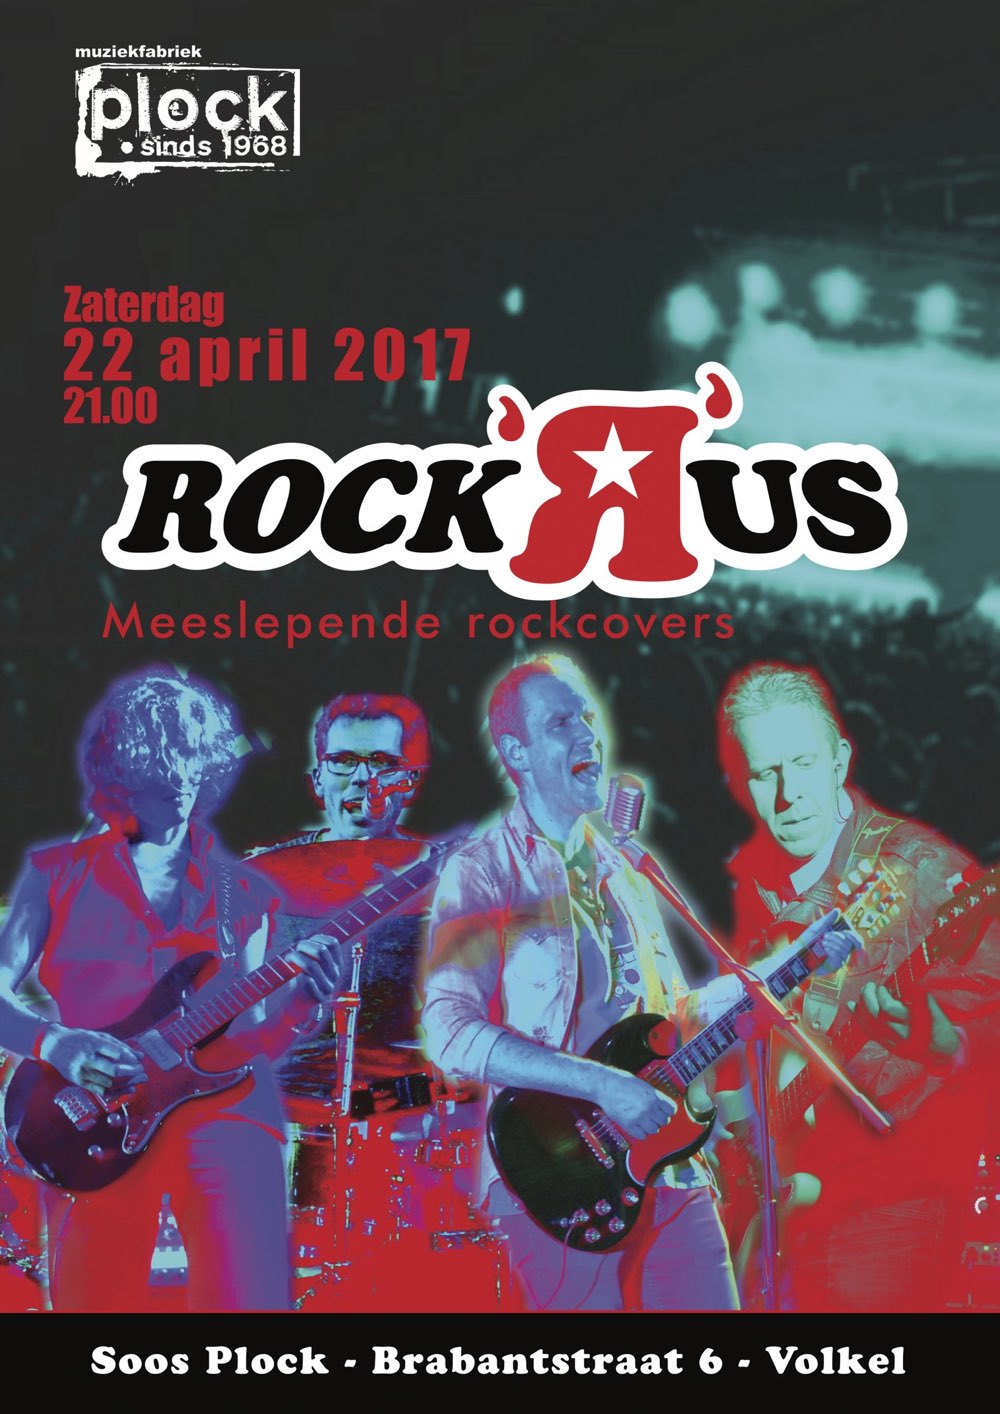 Rock 'R' us 22 April 2017 @ Soos Plock Volkel